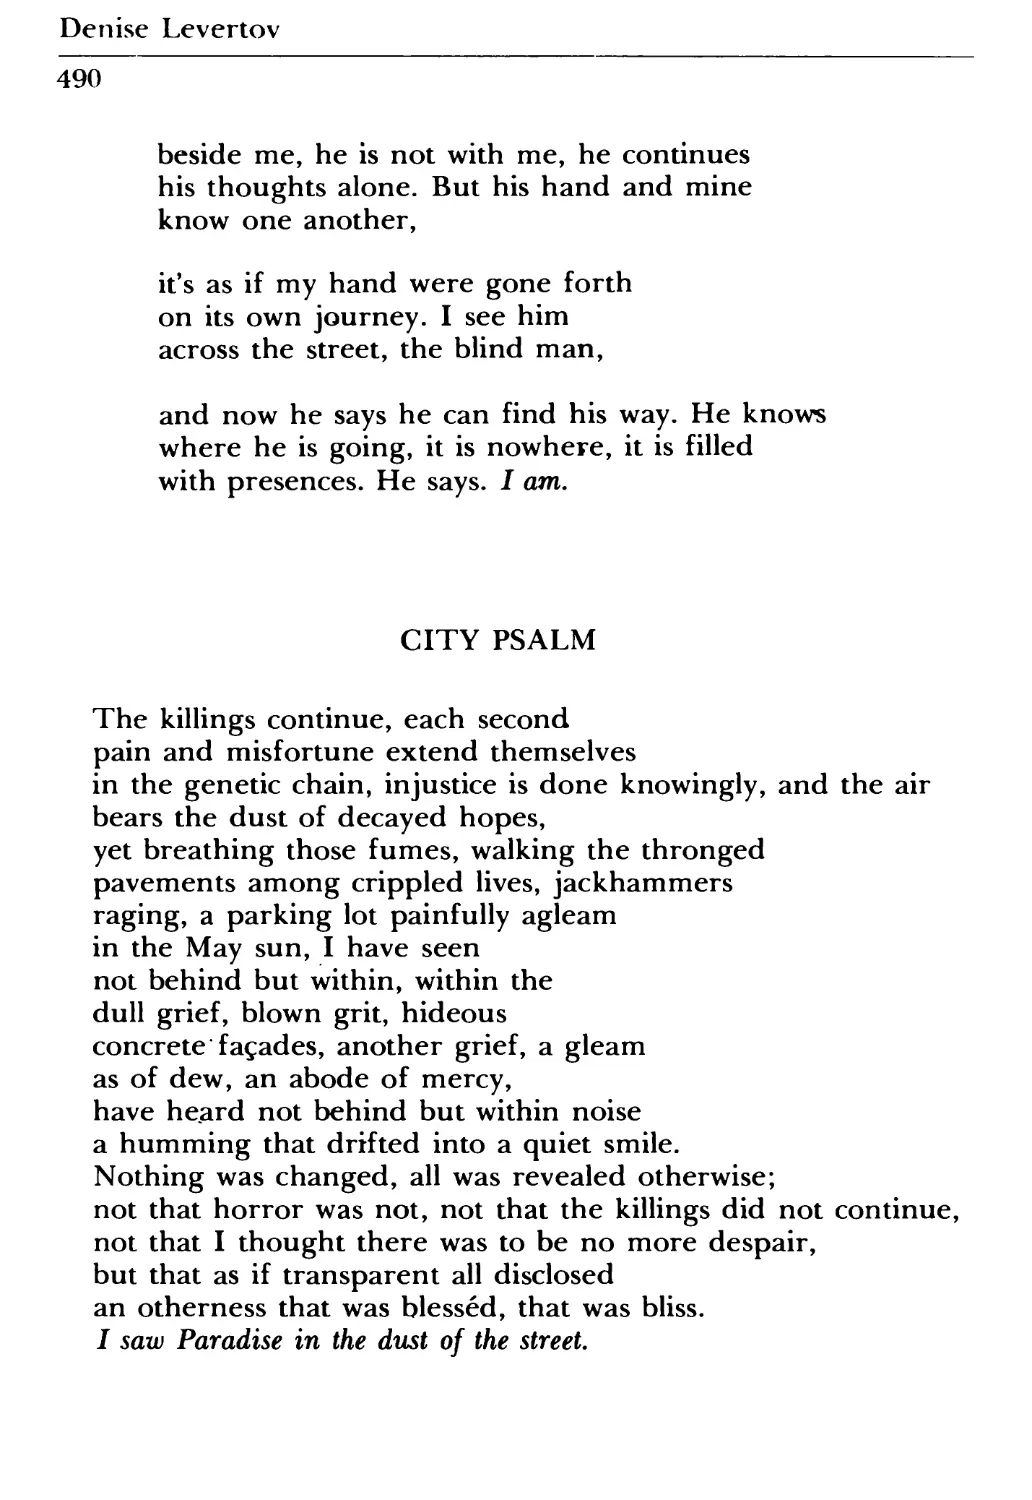 City Psalm